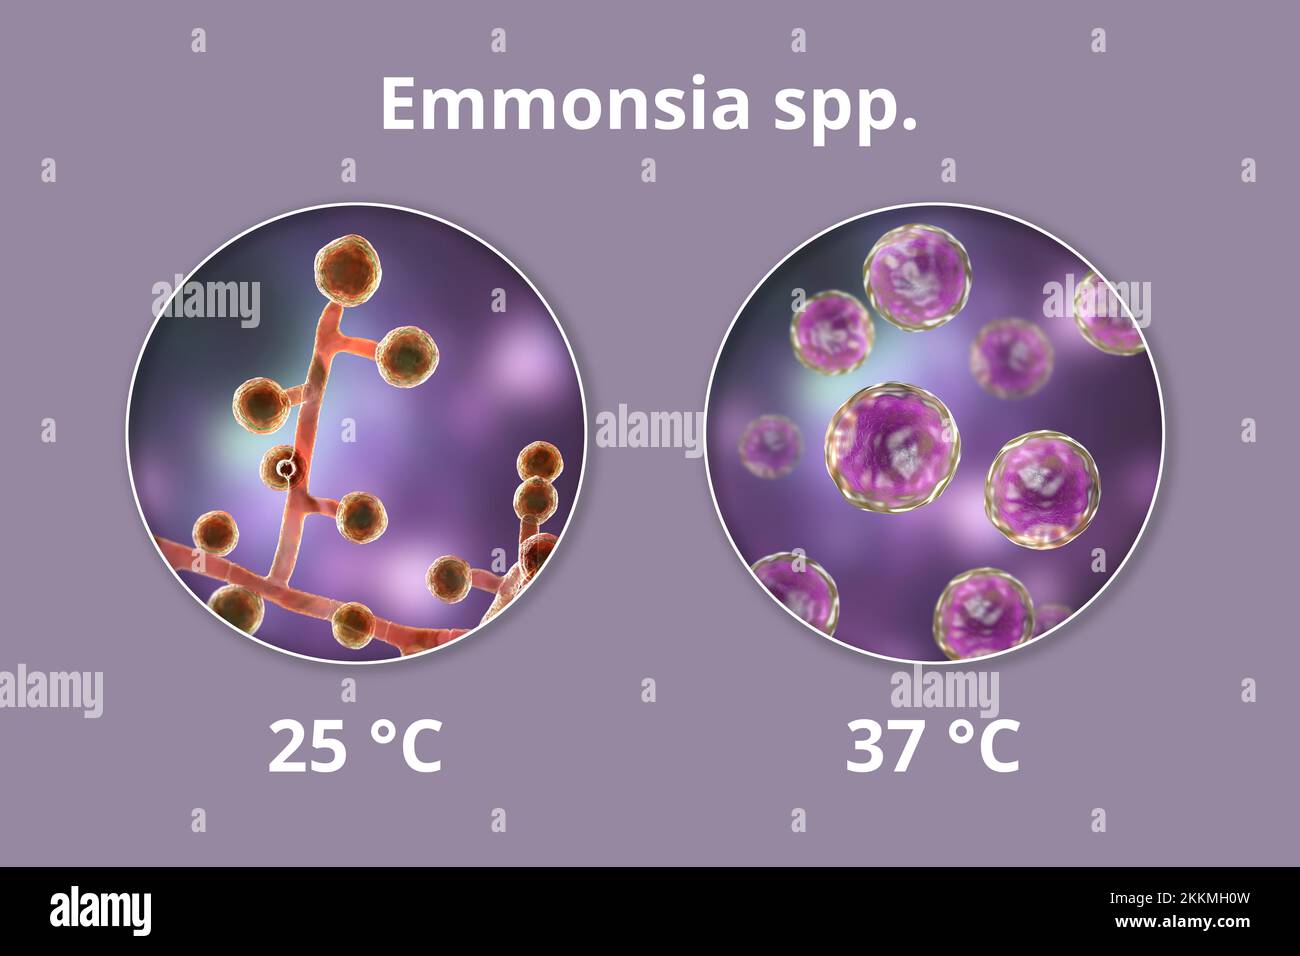 Emmonsia-Pilze, Illustration Stockfoto